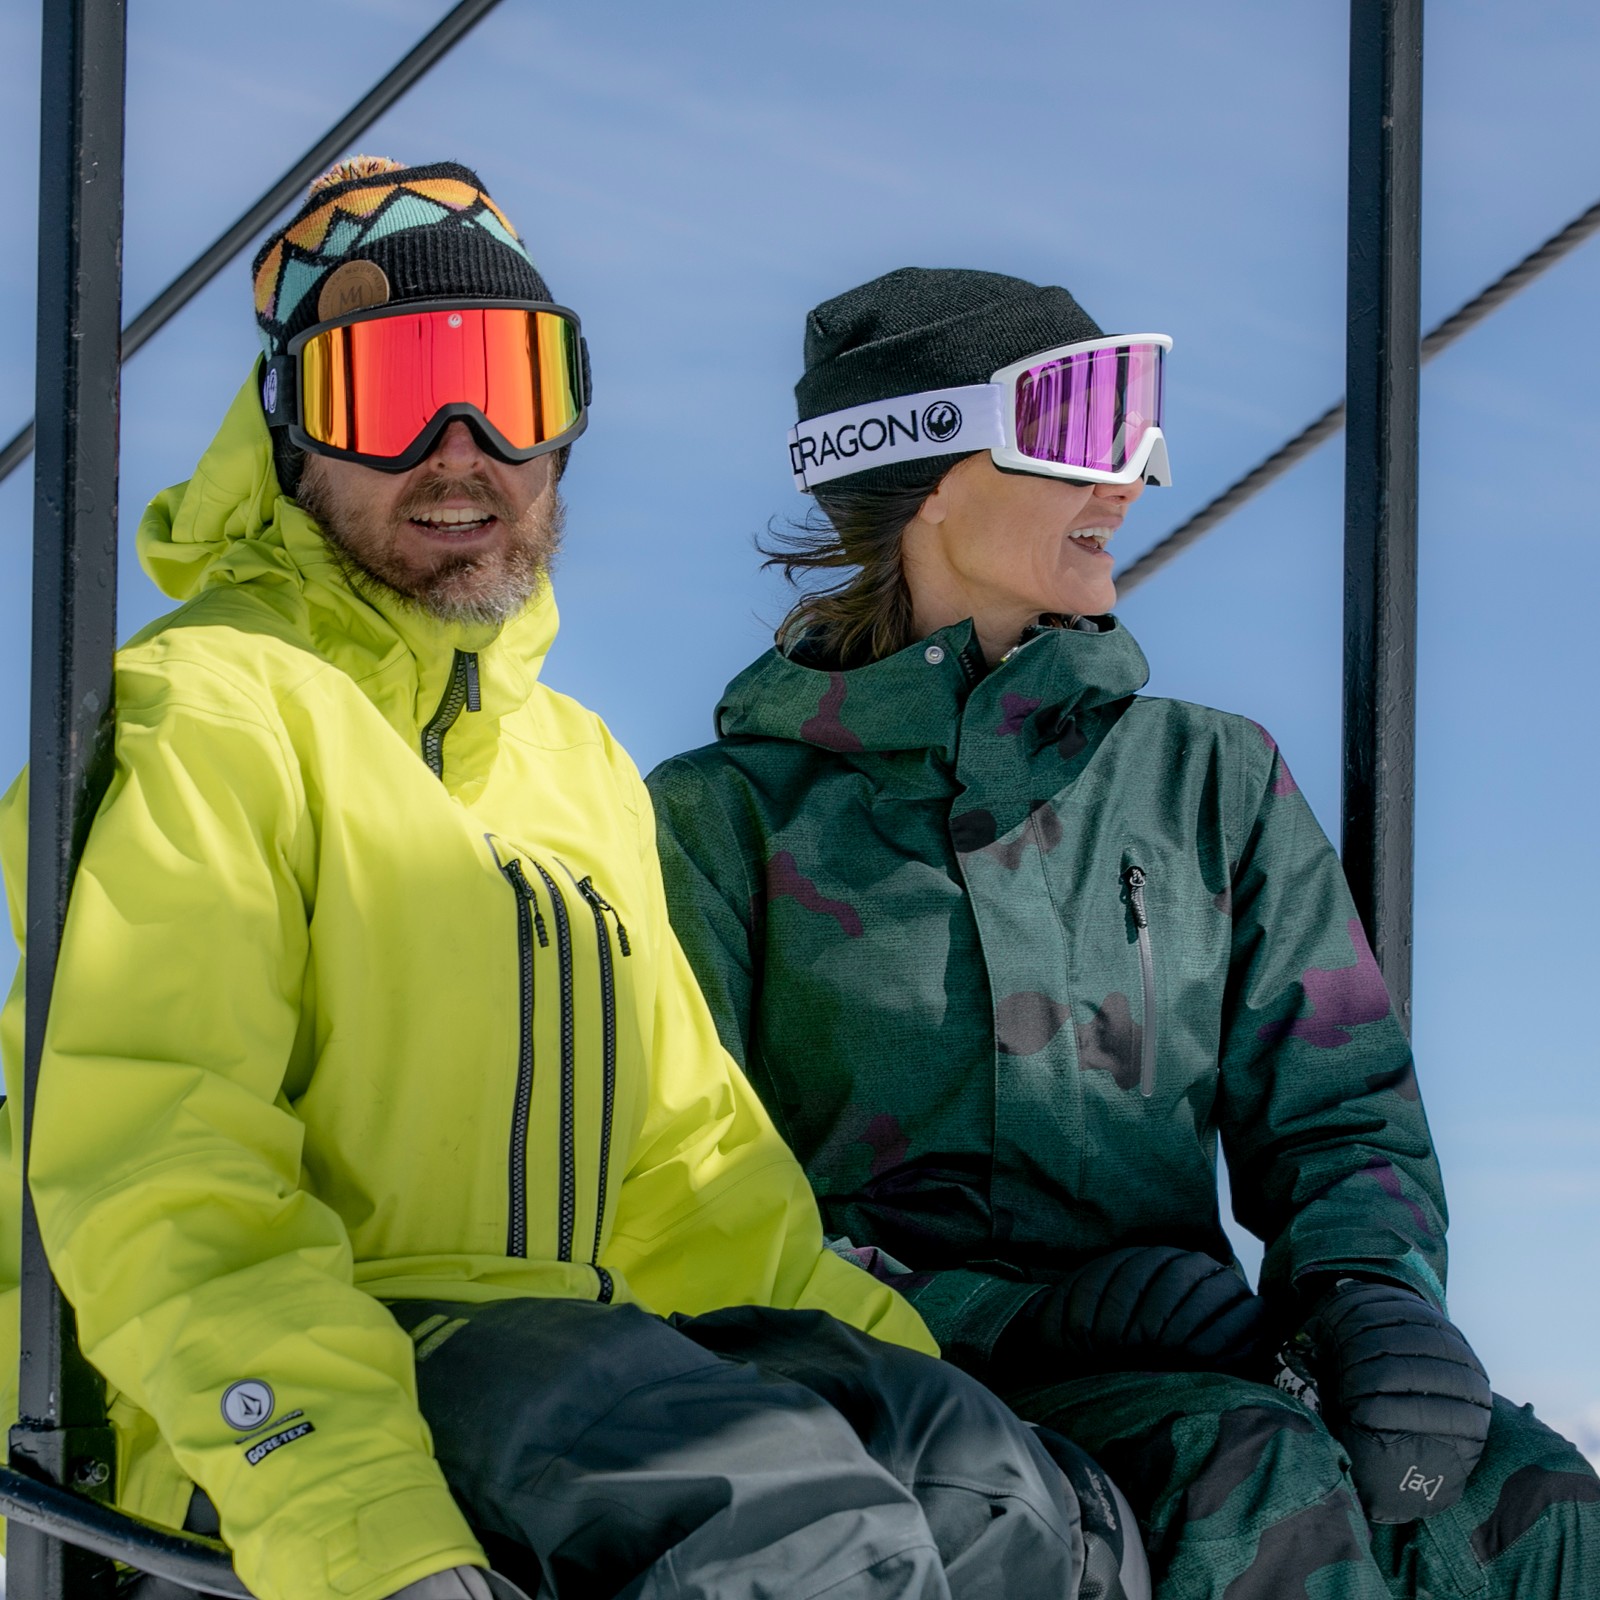 Dragon DX3 OTG Snowboard/Ski Goggles